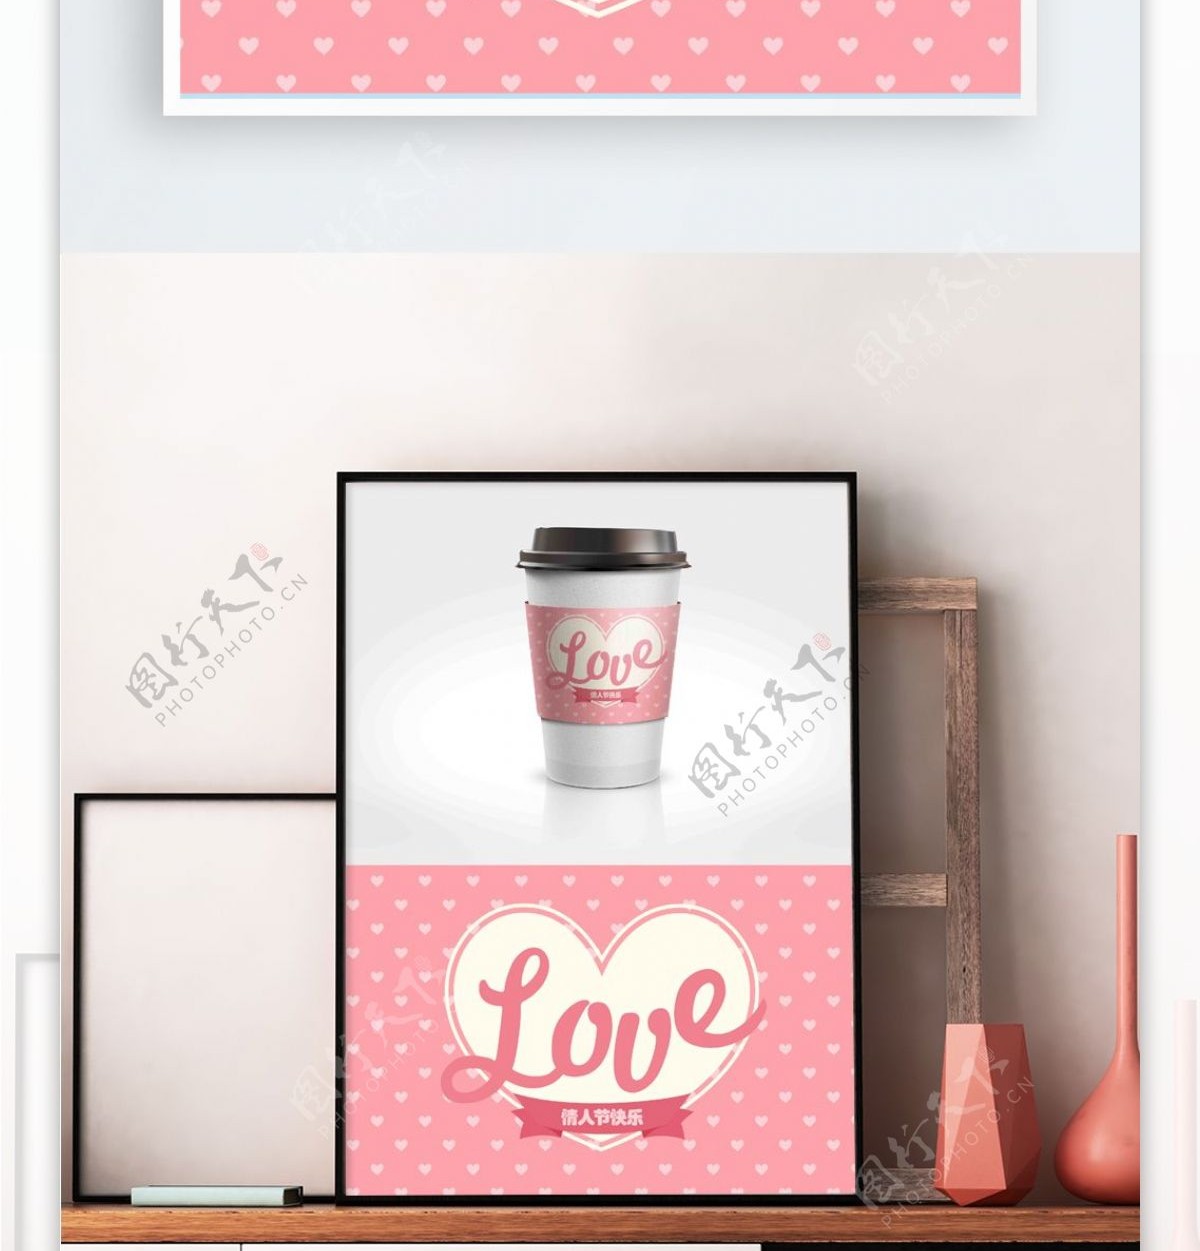 浪漫清新粉色爱心情人节咖啡杯套设计